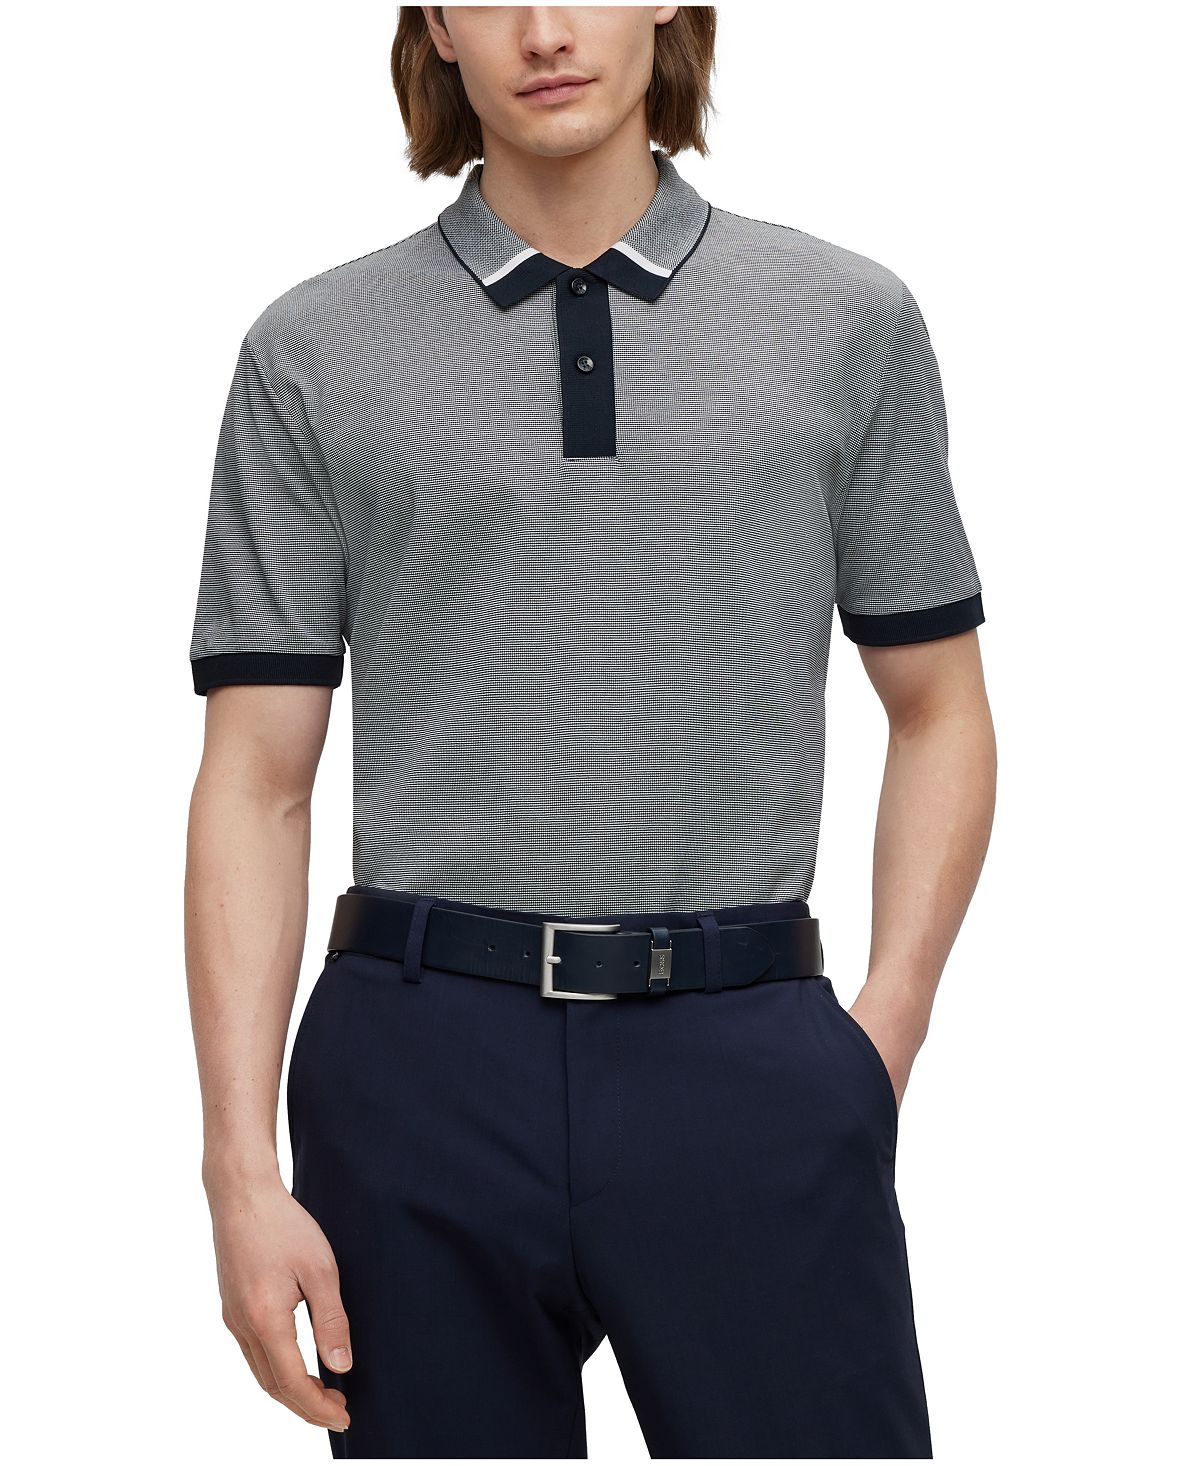 Мужская двухцветная рубашка-поло стандартного кроя Hugo Boss рубашка стандартного кроя из чистого хлопка luca d altieri голубой